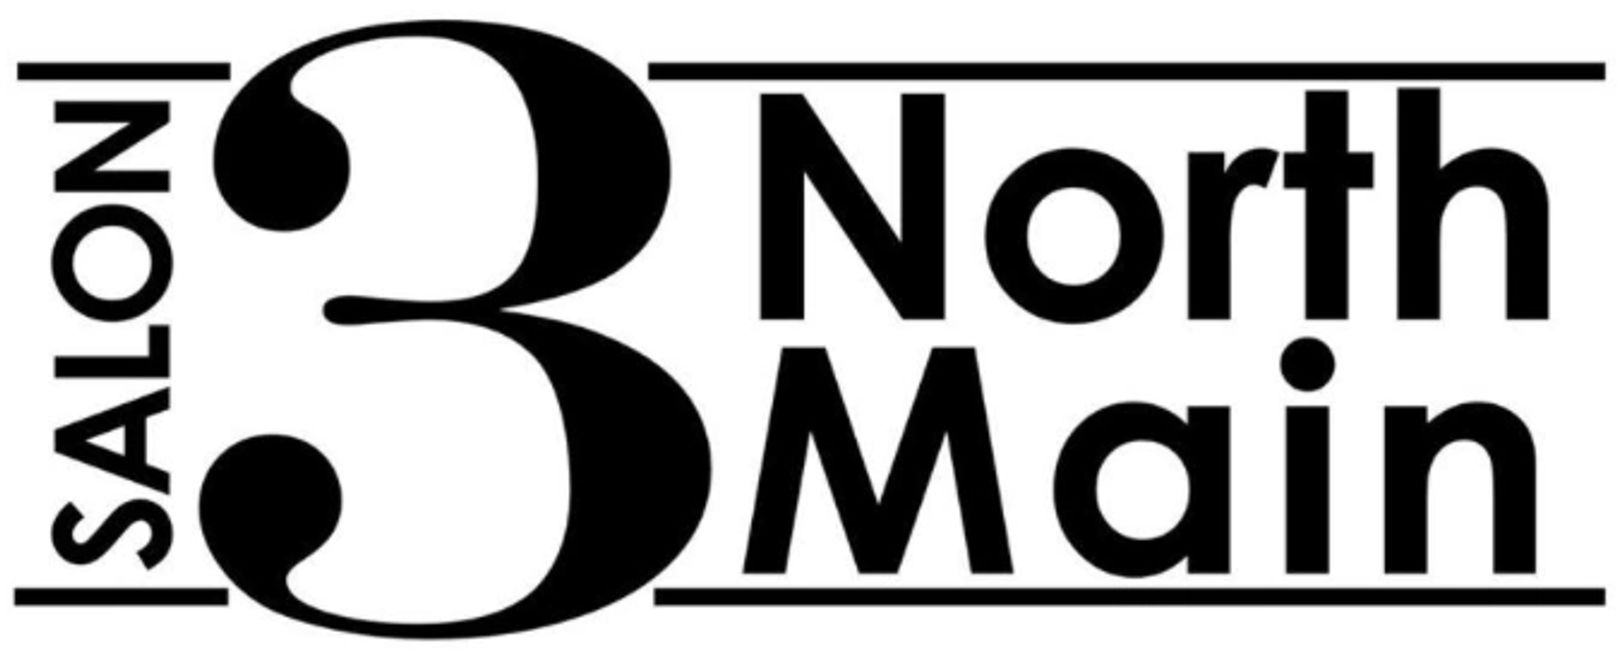 Salon 3 North Main logo